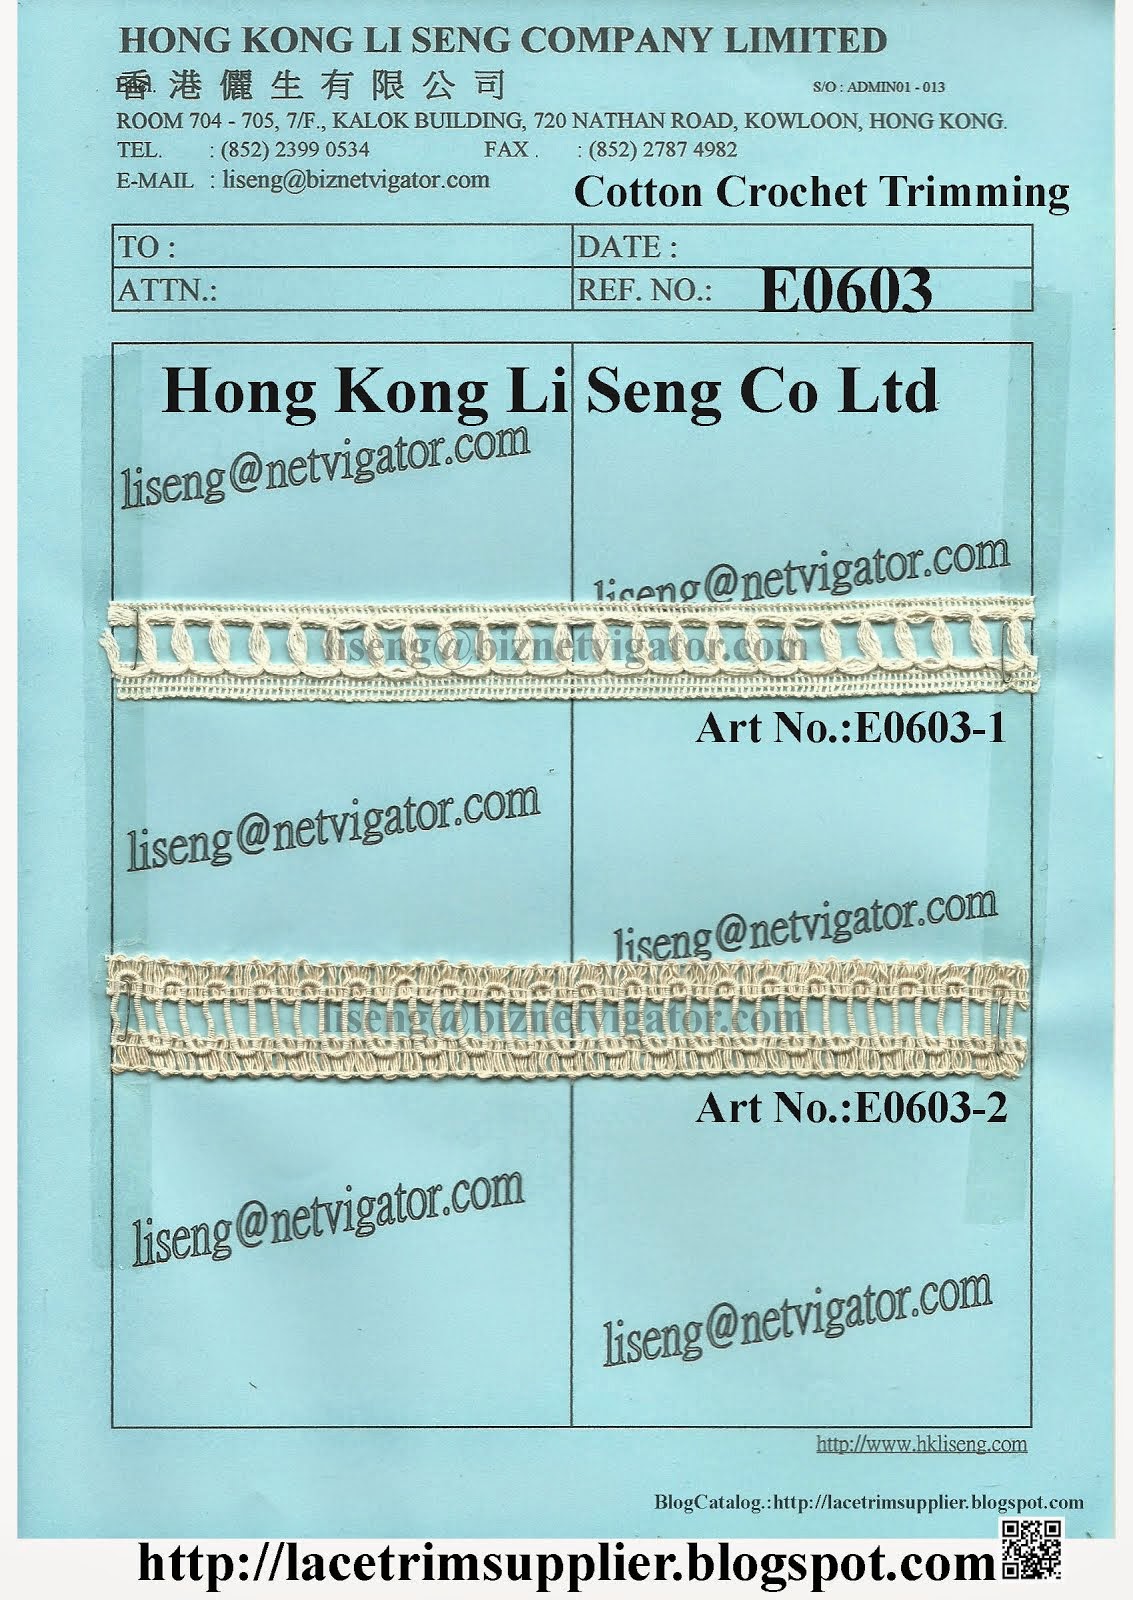 Cotton Crochet Trimming Manufacturer and Supplier - Hong Kong Li Seng Co Ltd